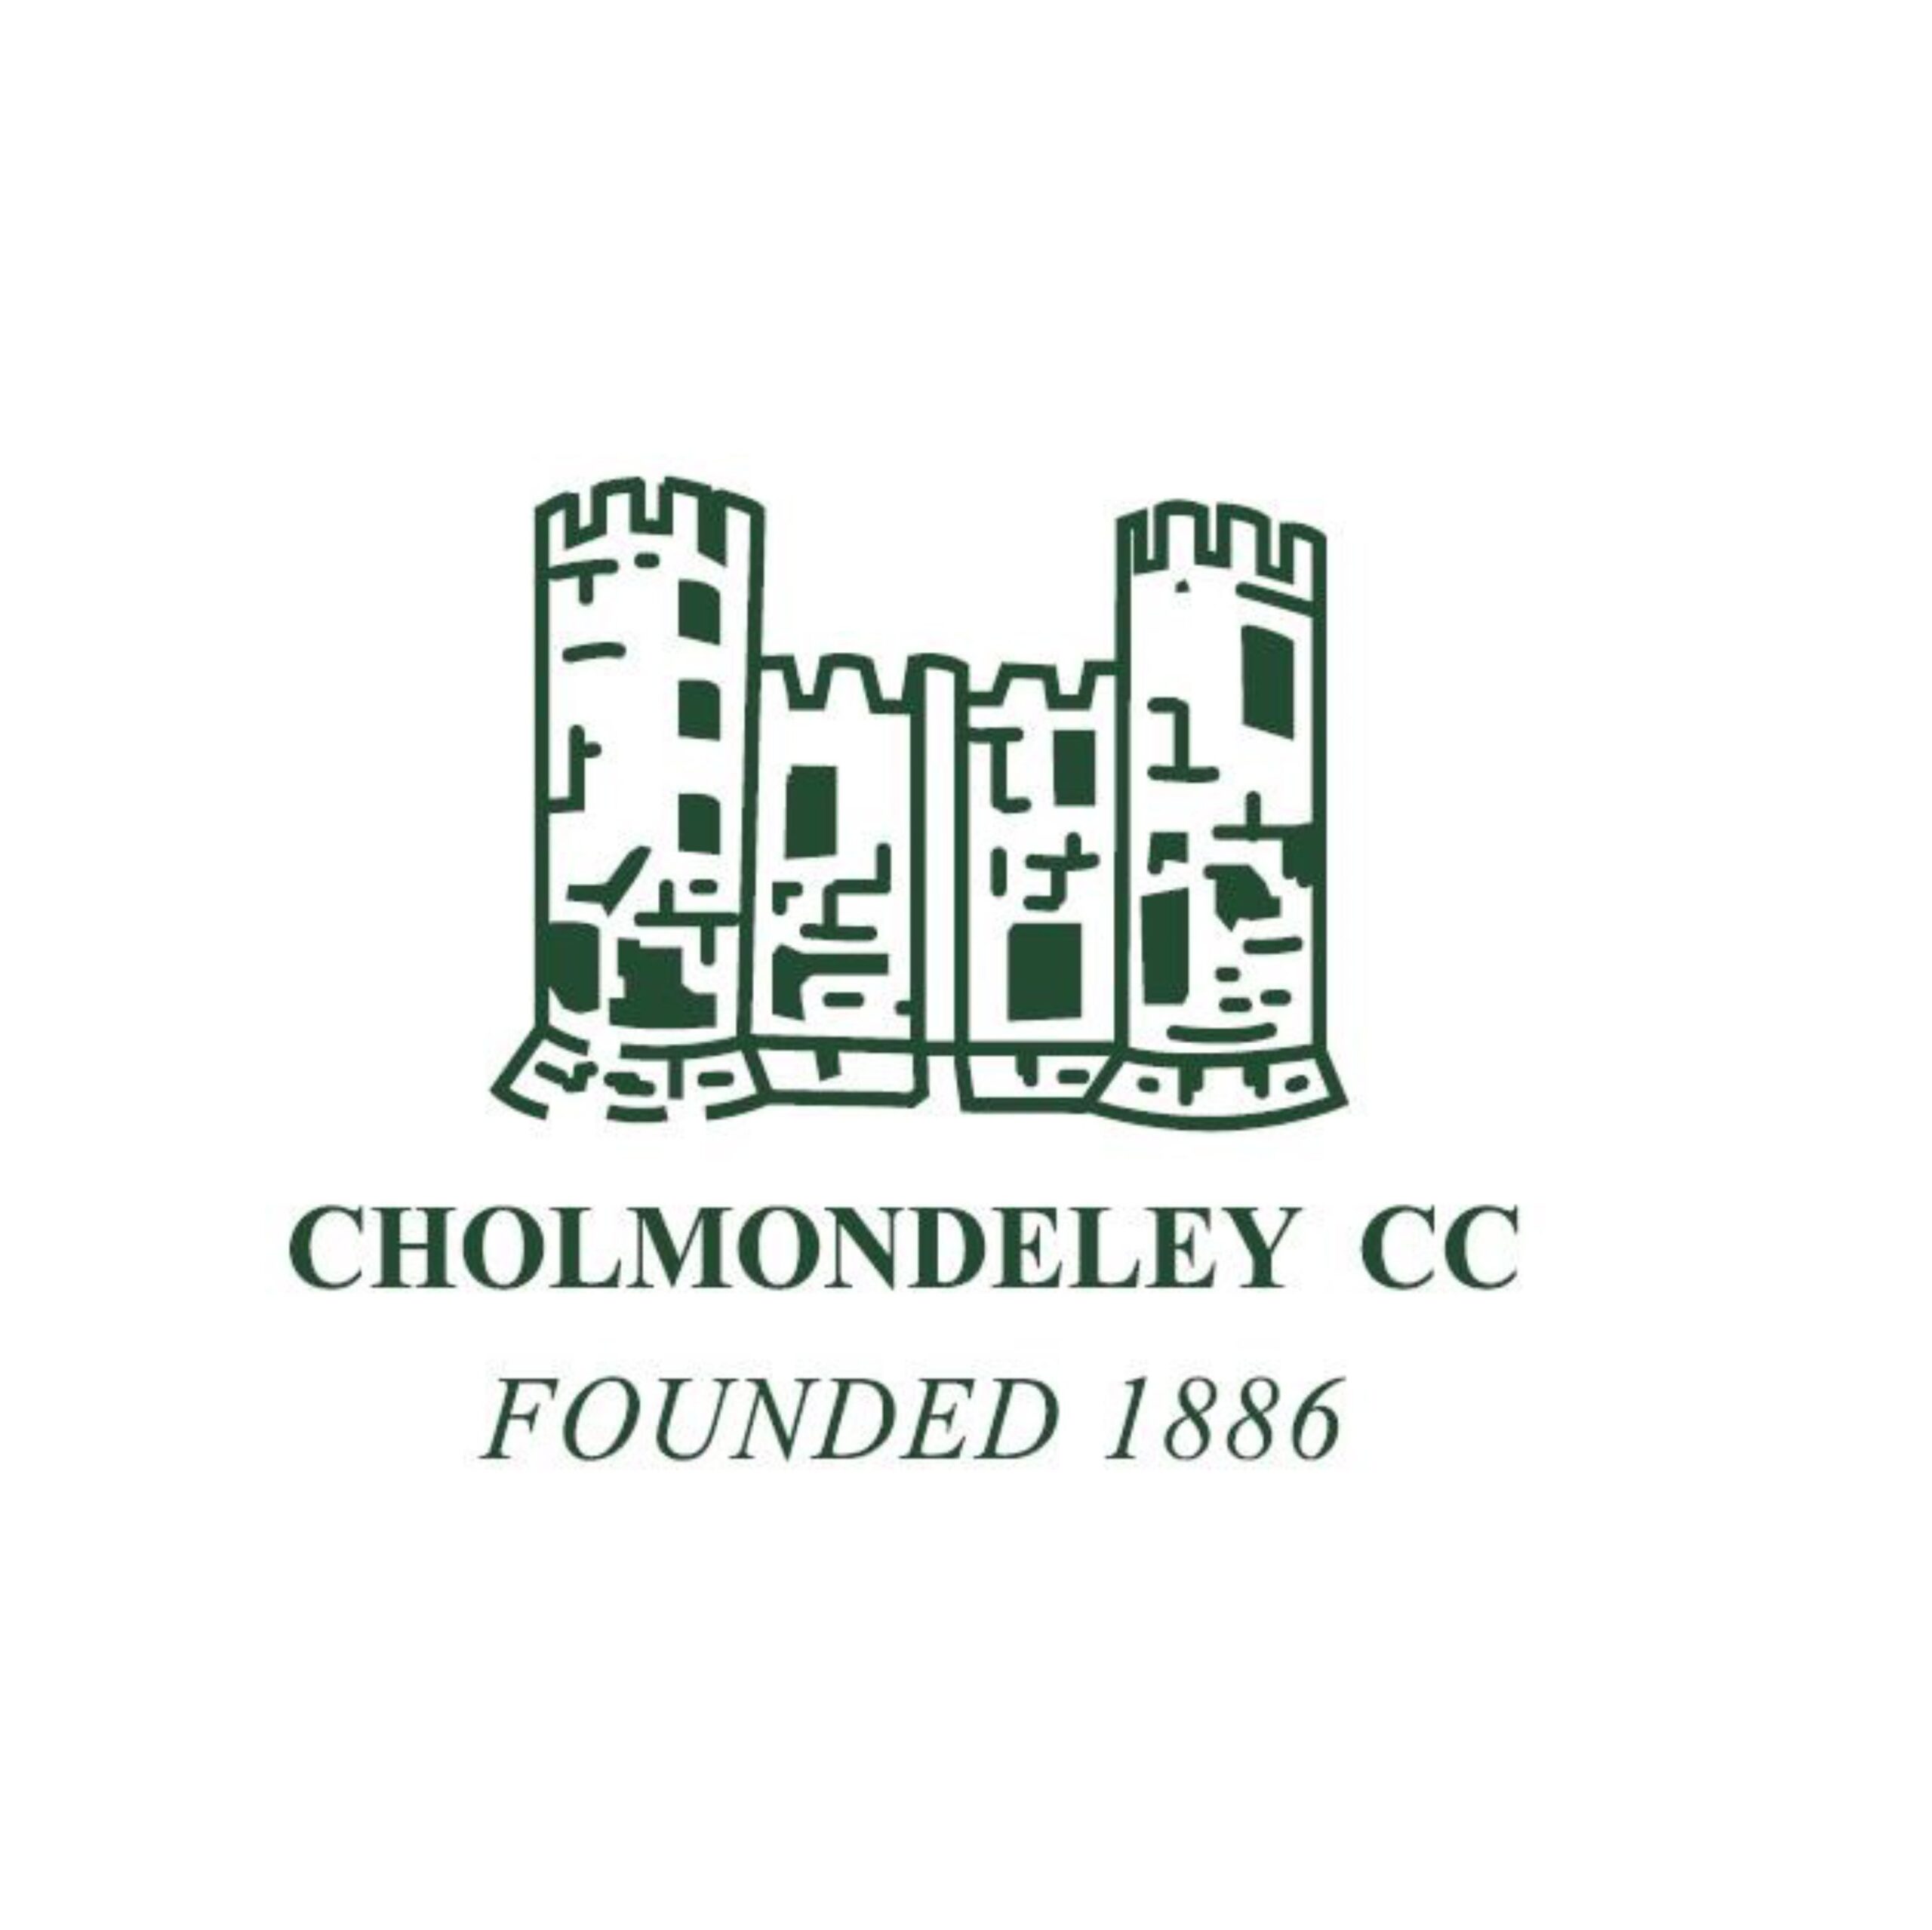 Cholmondeley CC